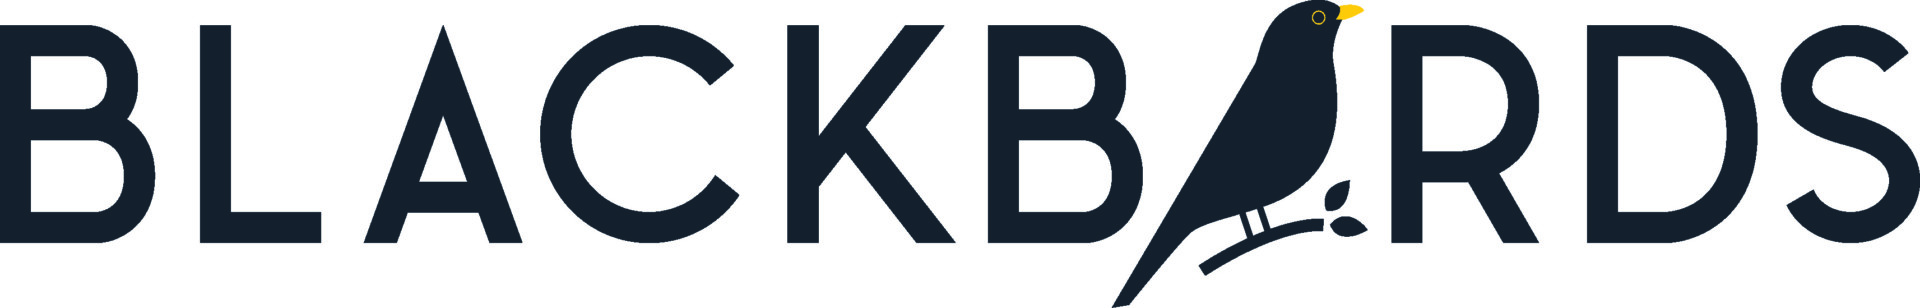 BLACKBIRDS-logo-Colour-CMYK